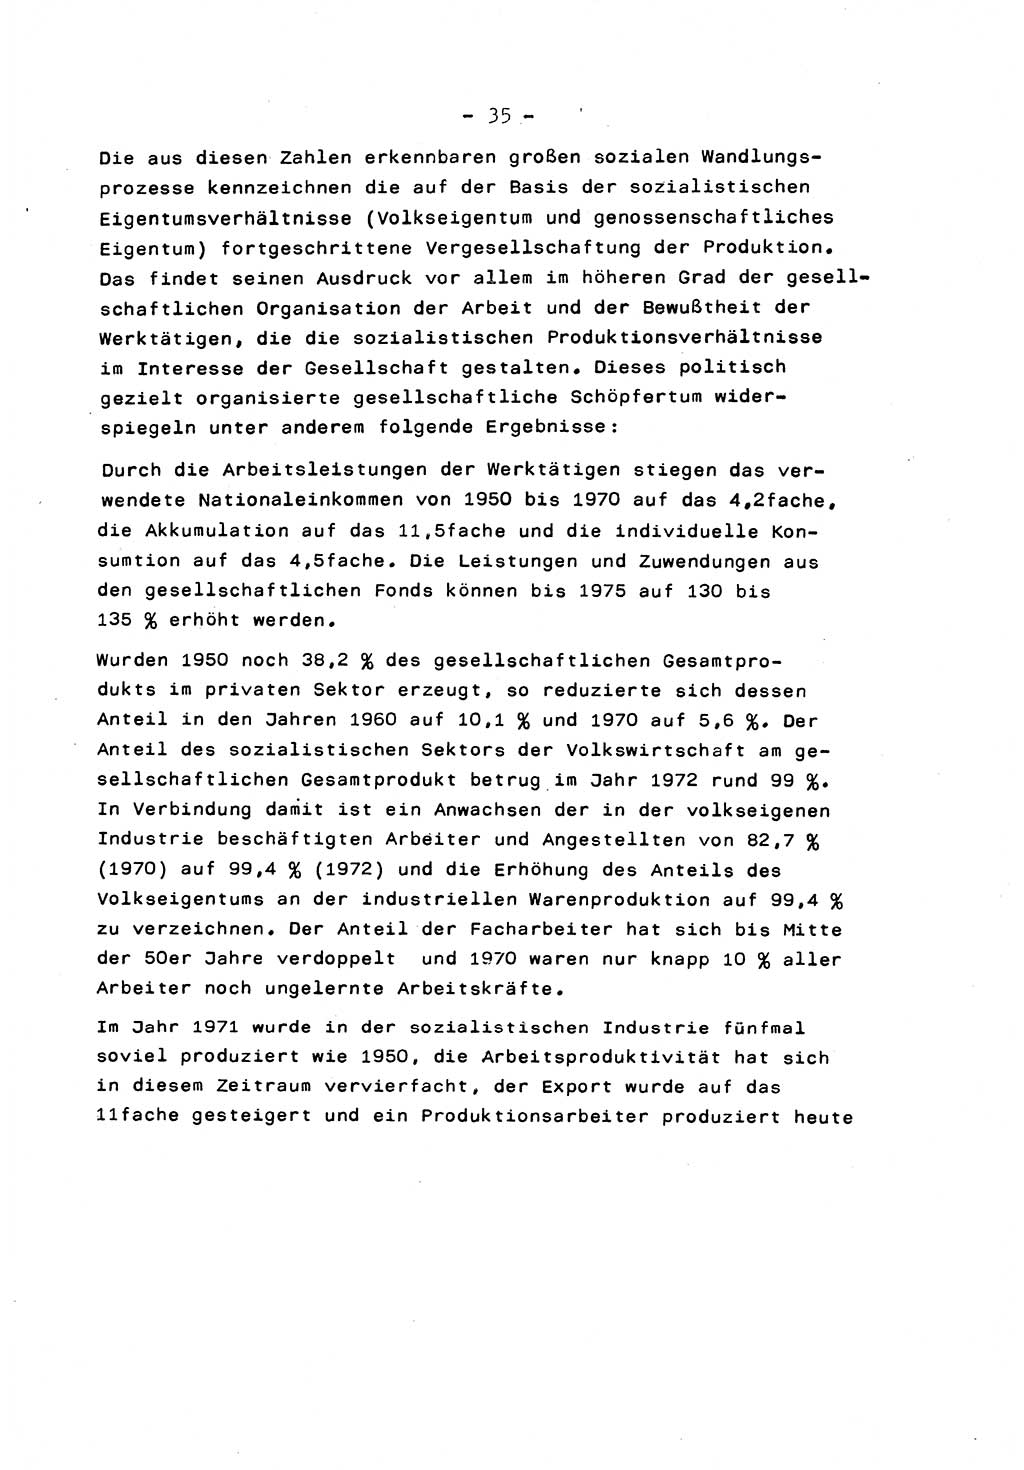 Marxistisch-leninistische Staats- und Rechtstheorie [Deutsche Demokratische Republik (DDR)] 1975, Seite 35 (ML St.-R.-Th. DDR 1975, S. 35)